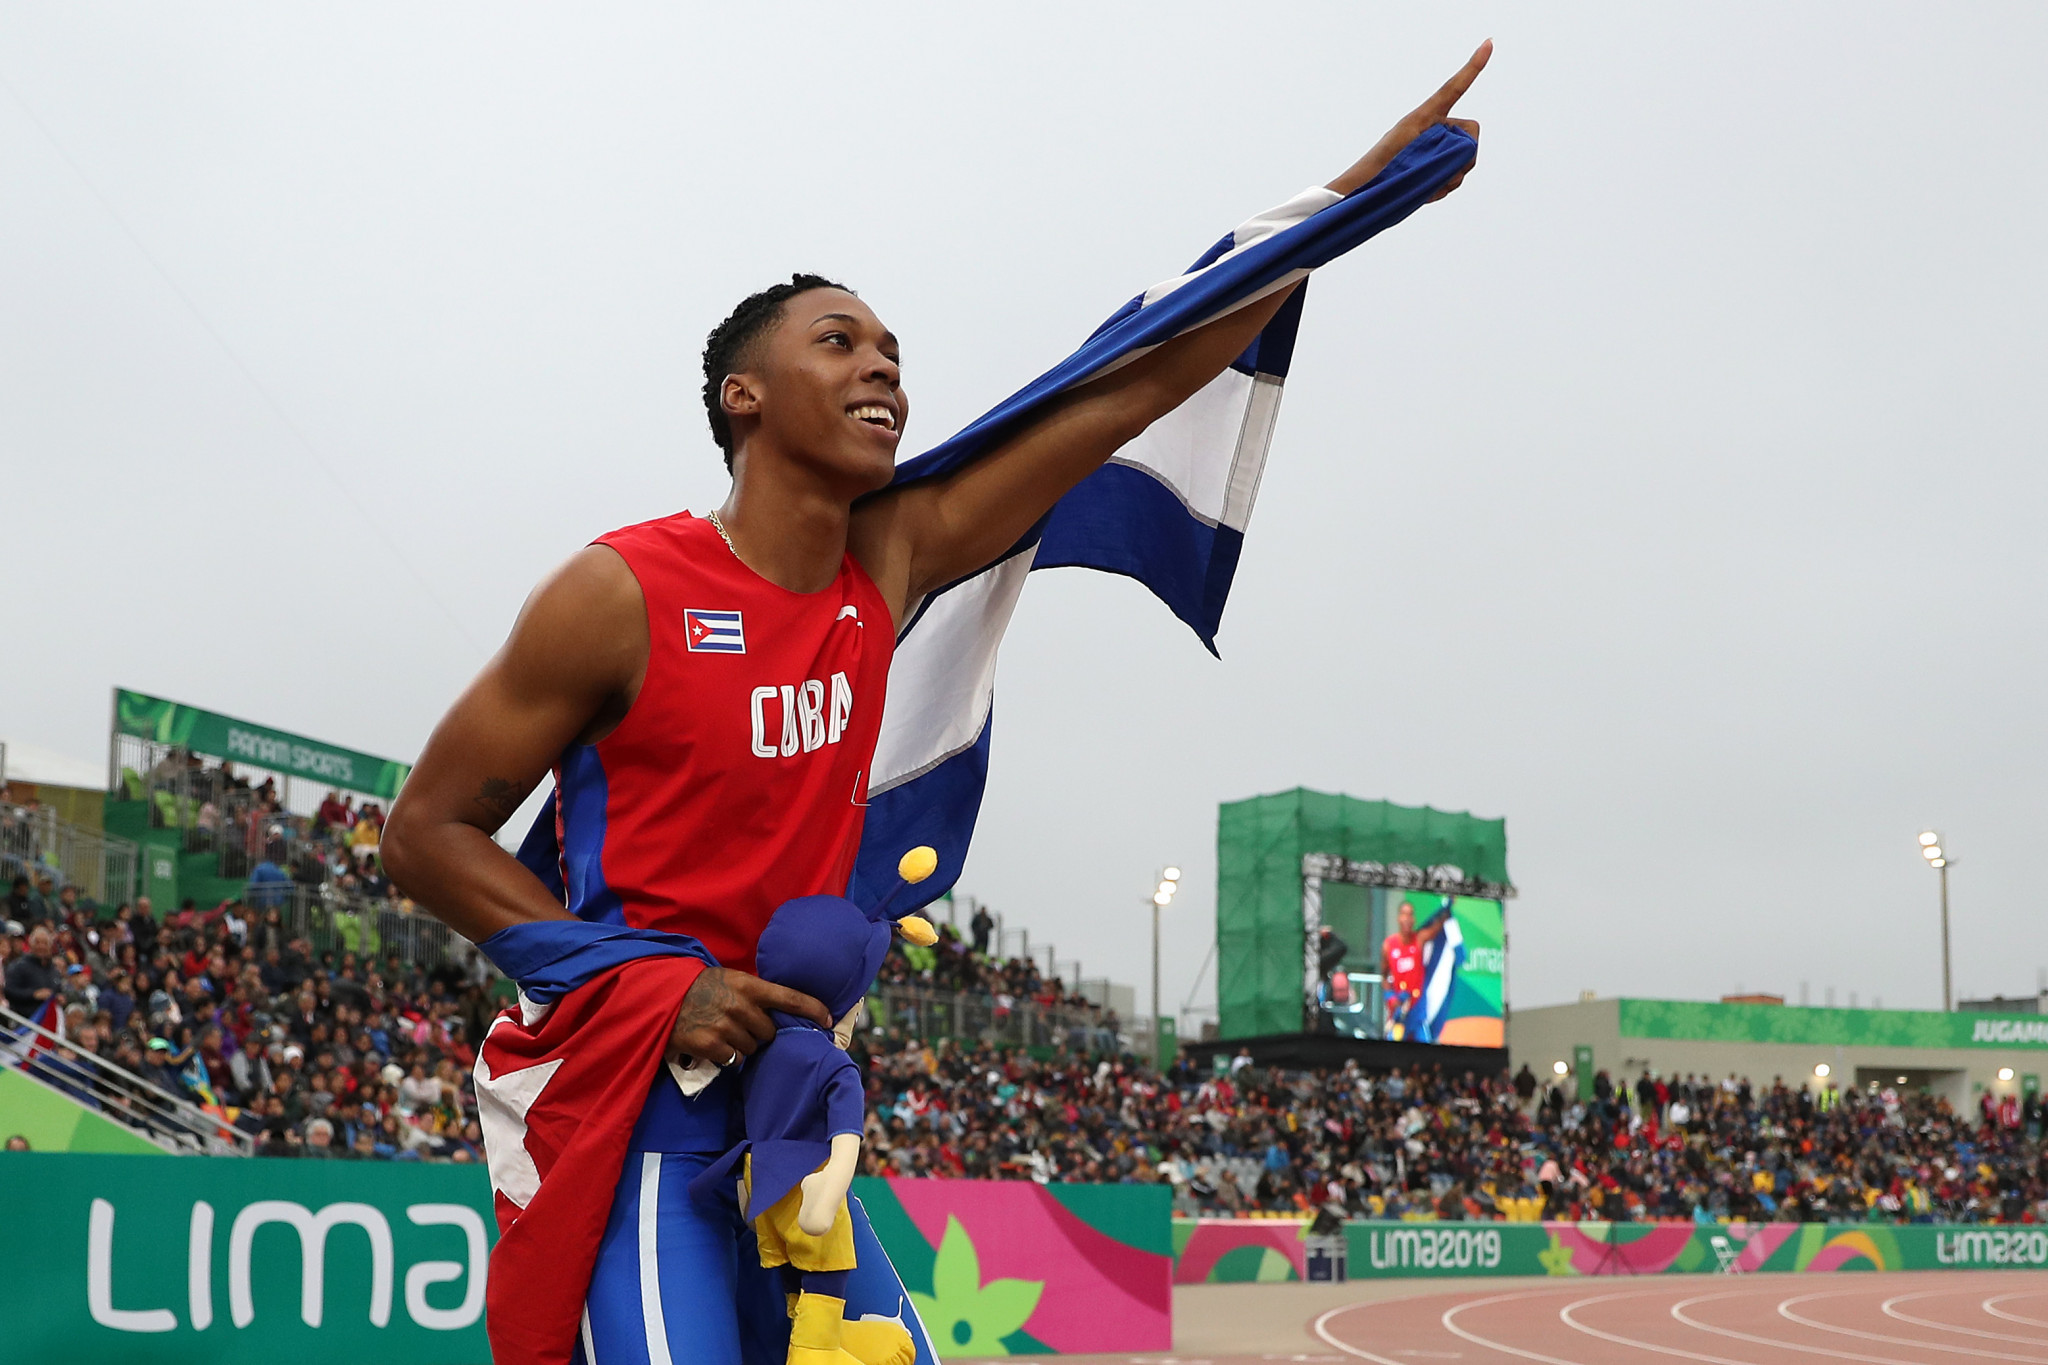 Cuba's Juan Miguel Echevarría won the men's long jump ©Getty Images